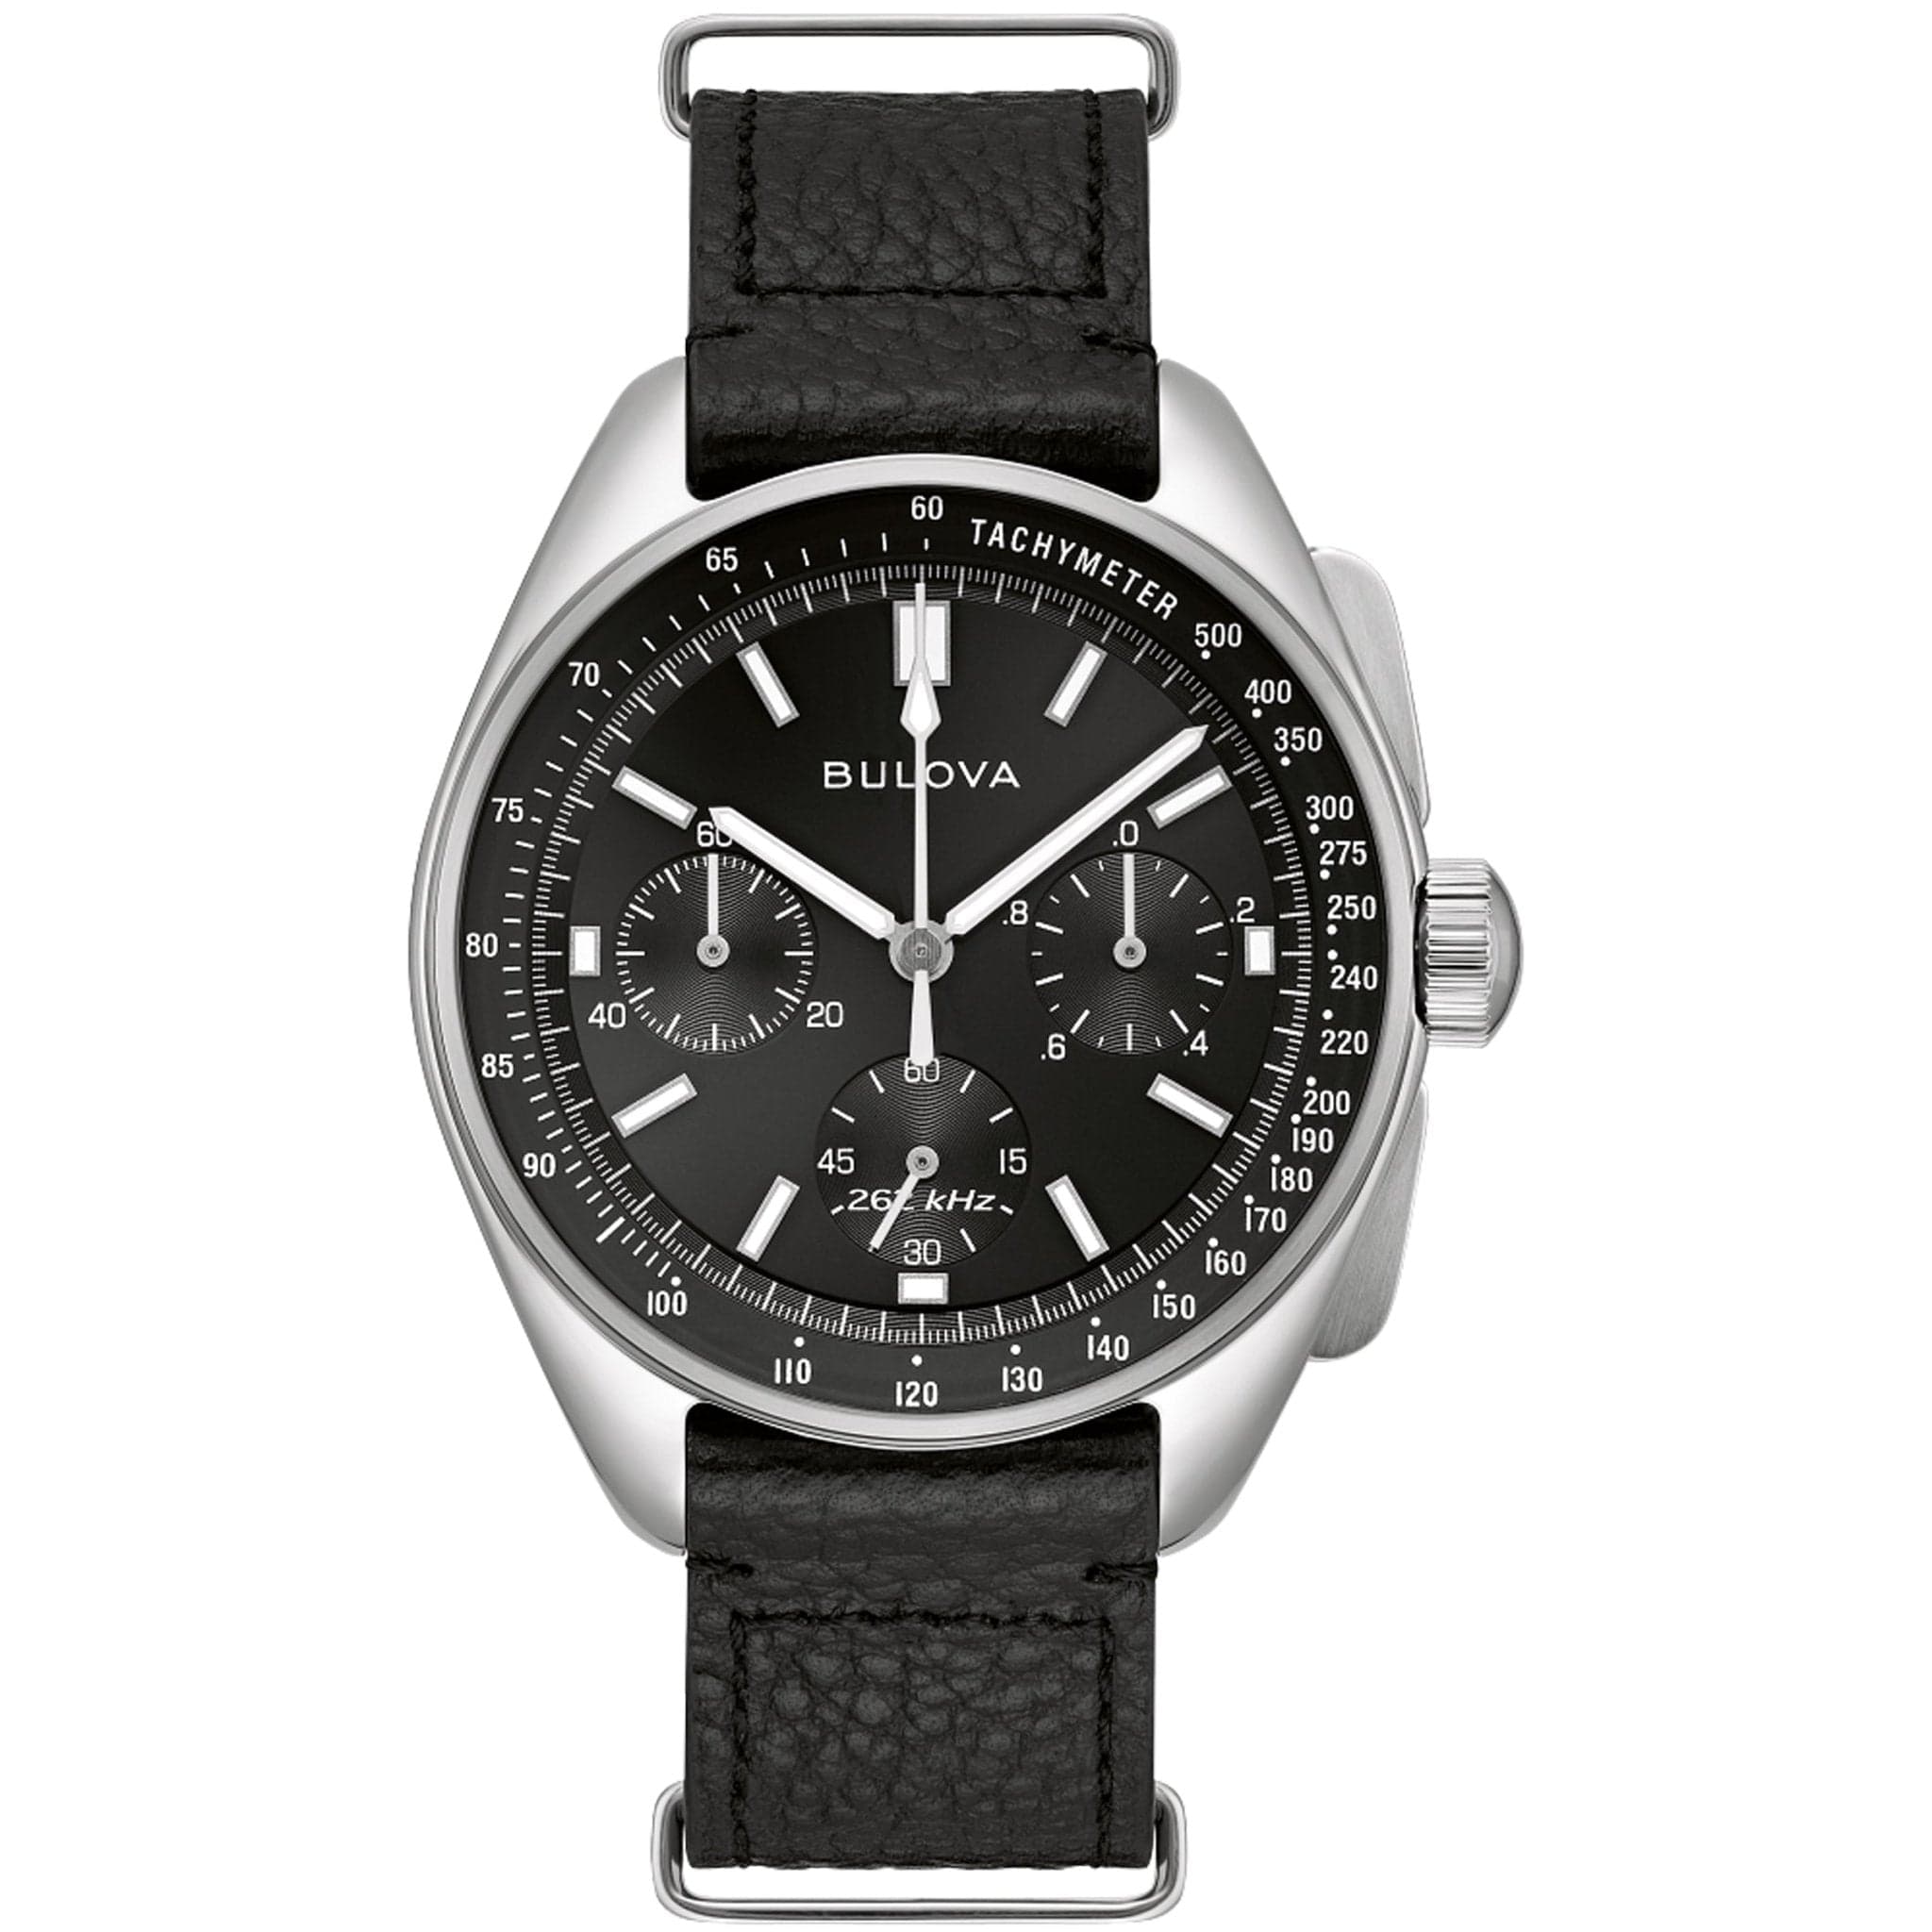 Bulova Lunar Pilot Archive Chronograph Quartz Black Dial Watch 96K111